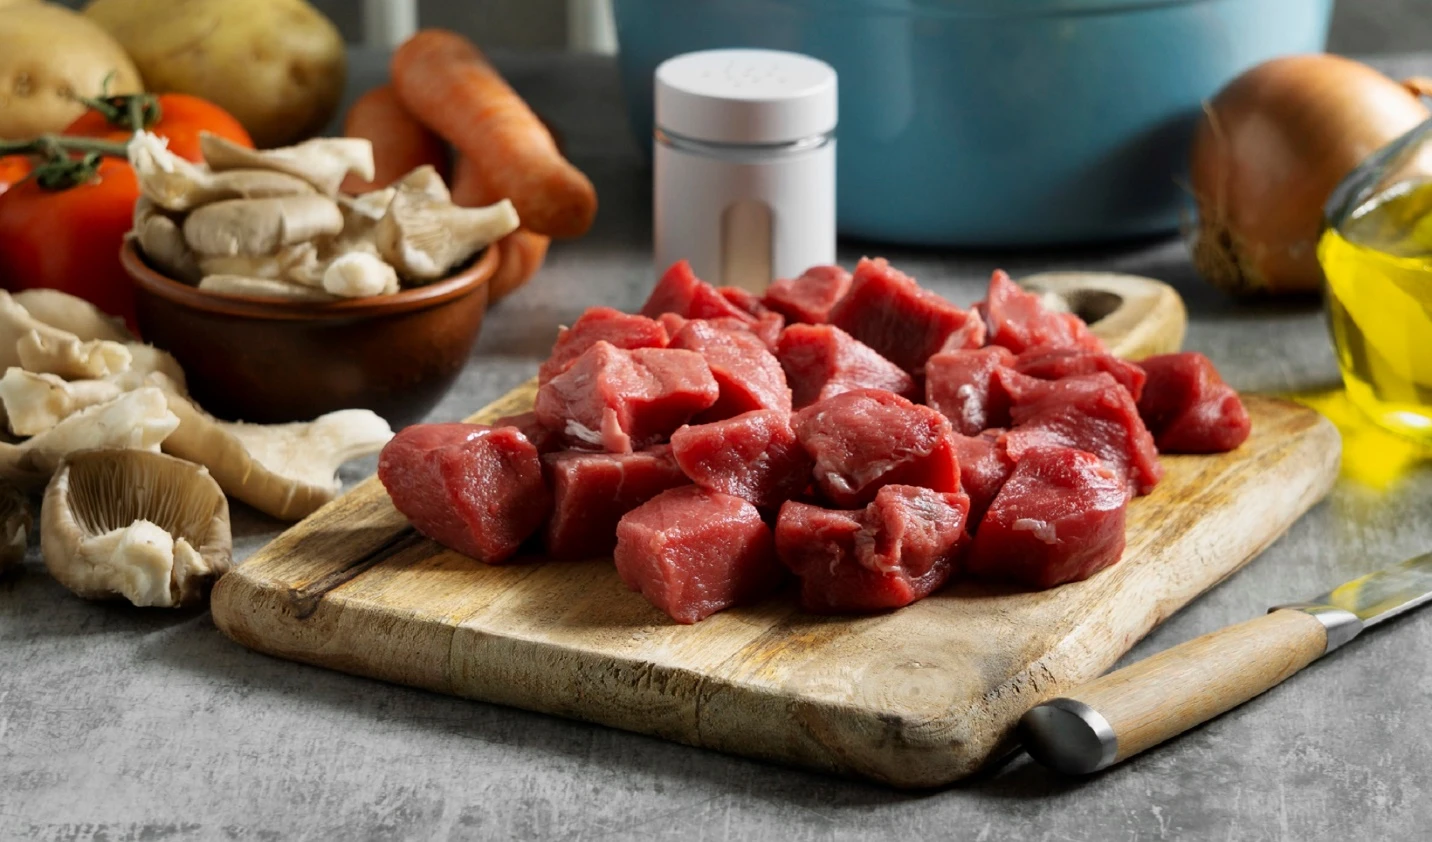 گوشت قرمز چه تاثیری روی سلامتی دارد؟